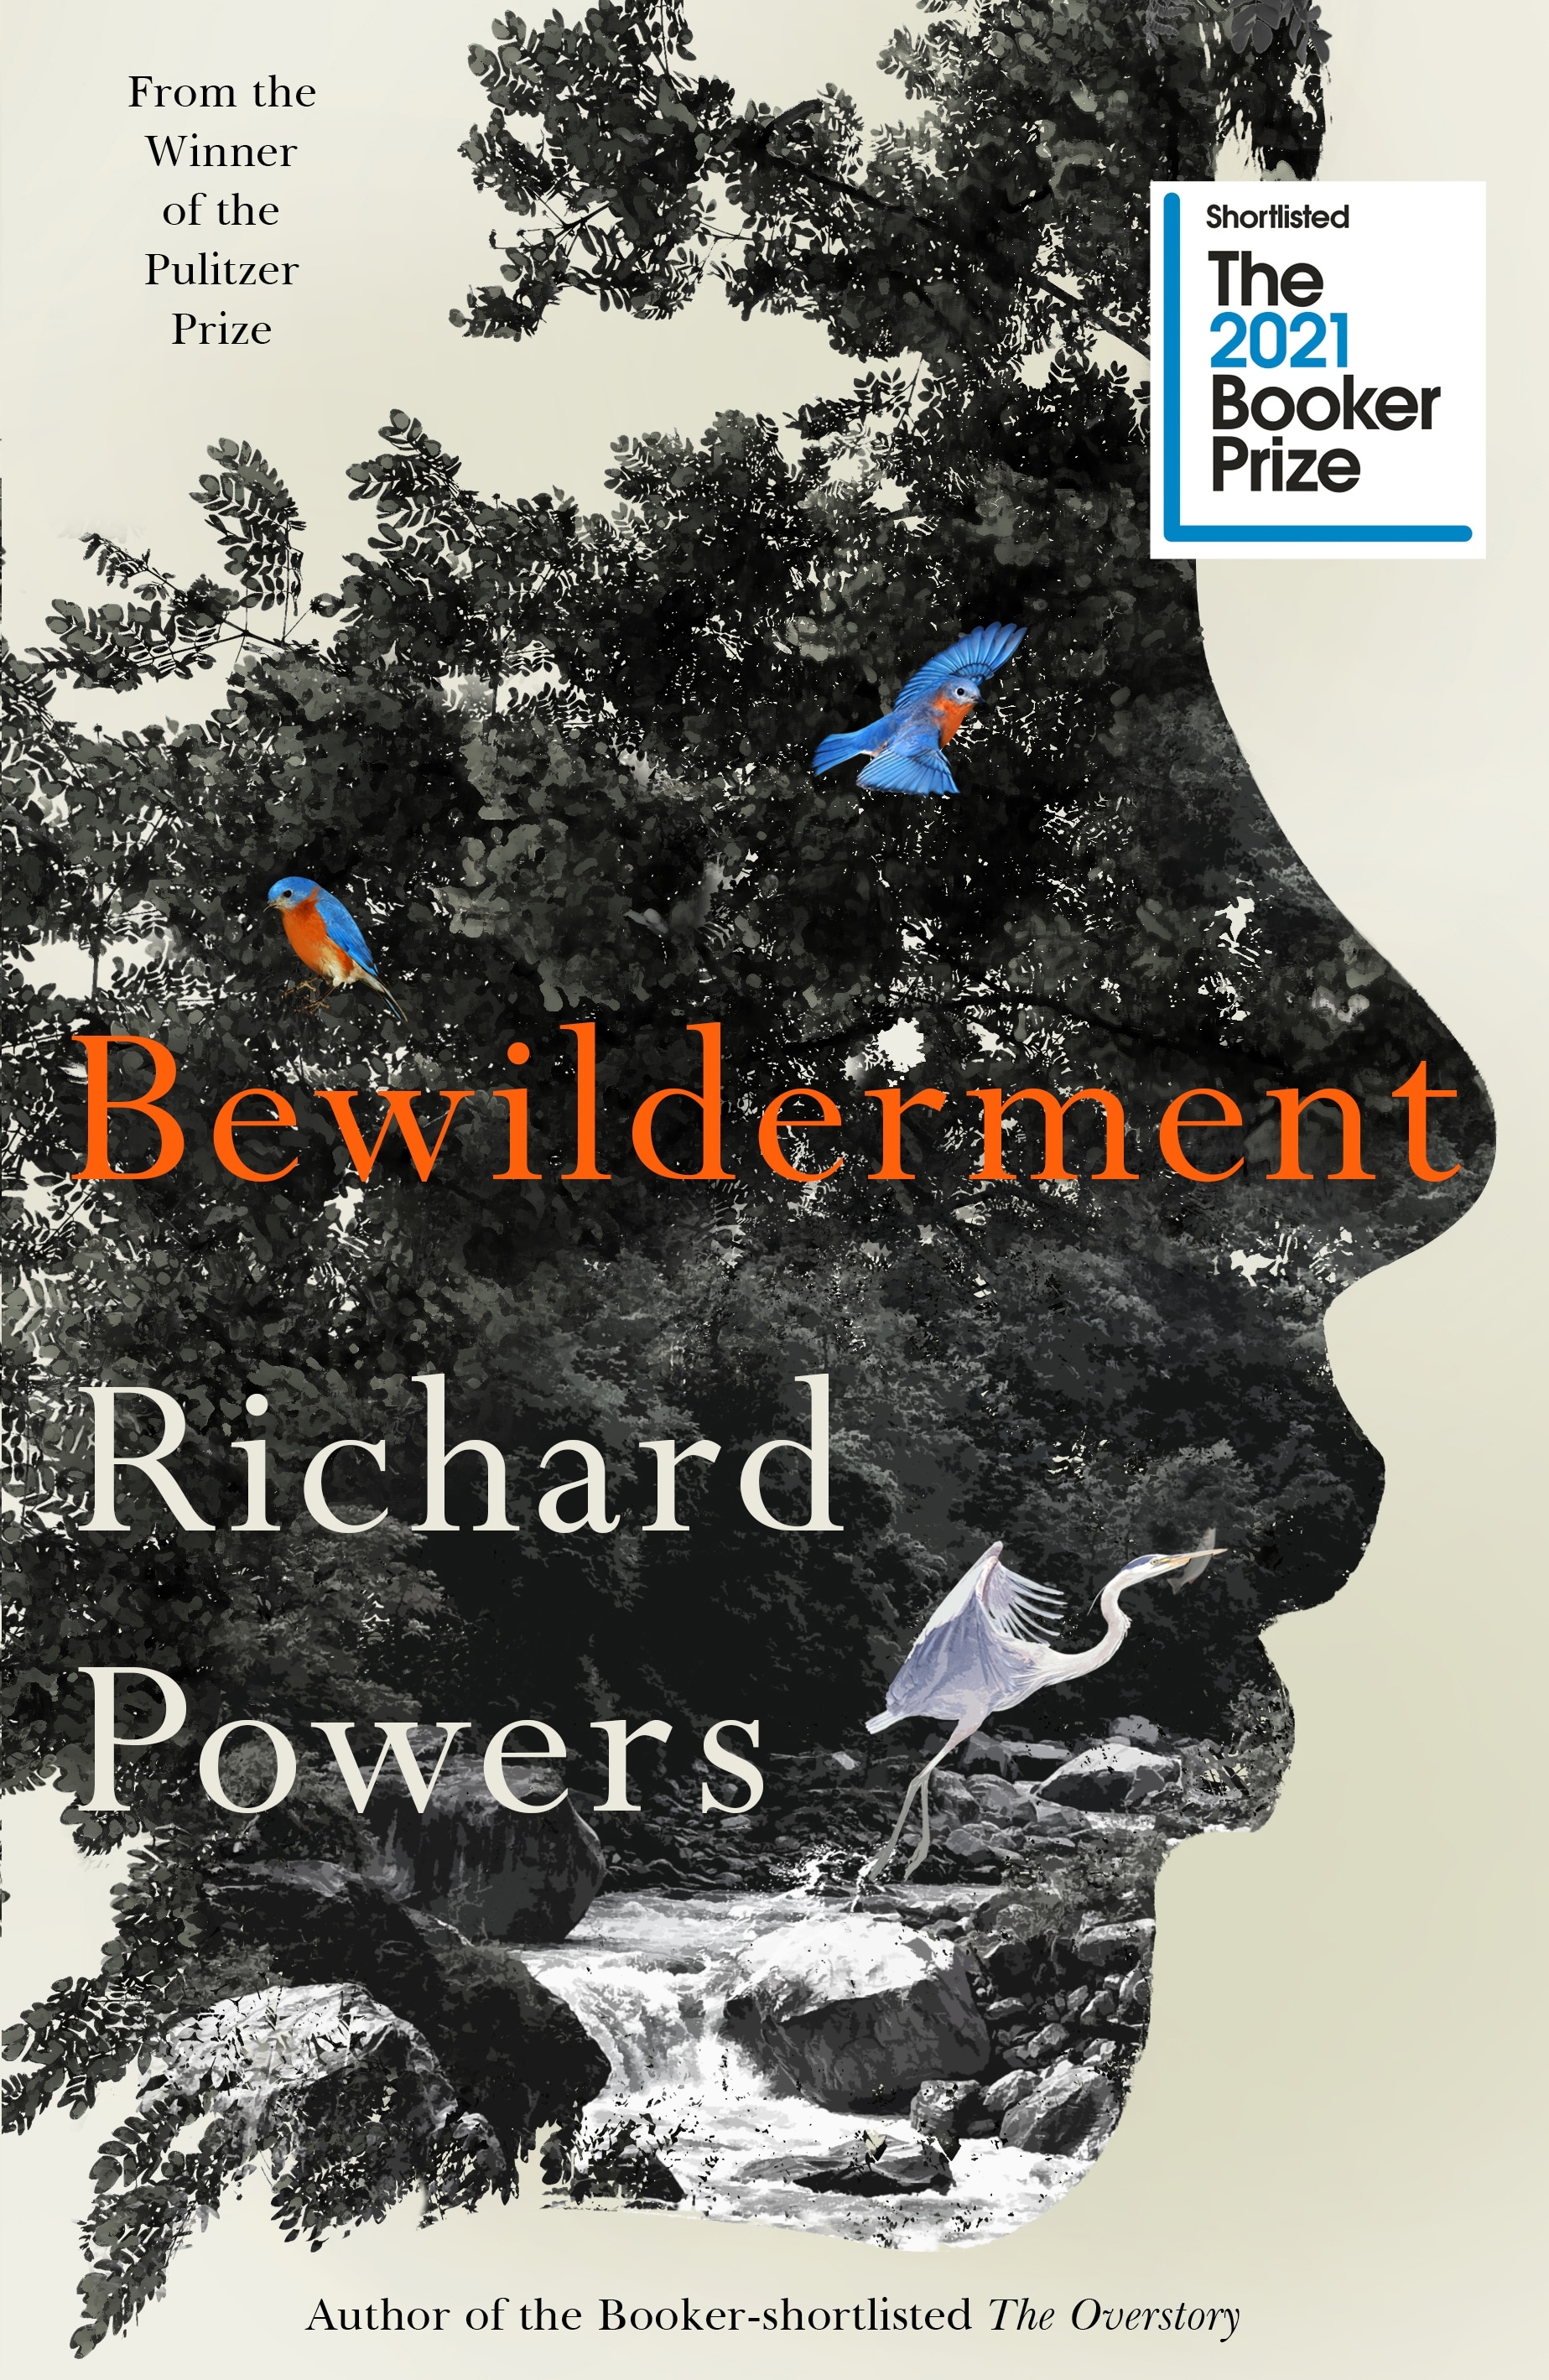 Book “Bewilderment” by Richard Powers — September 21, 2021